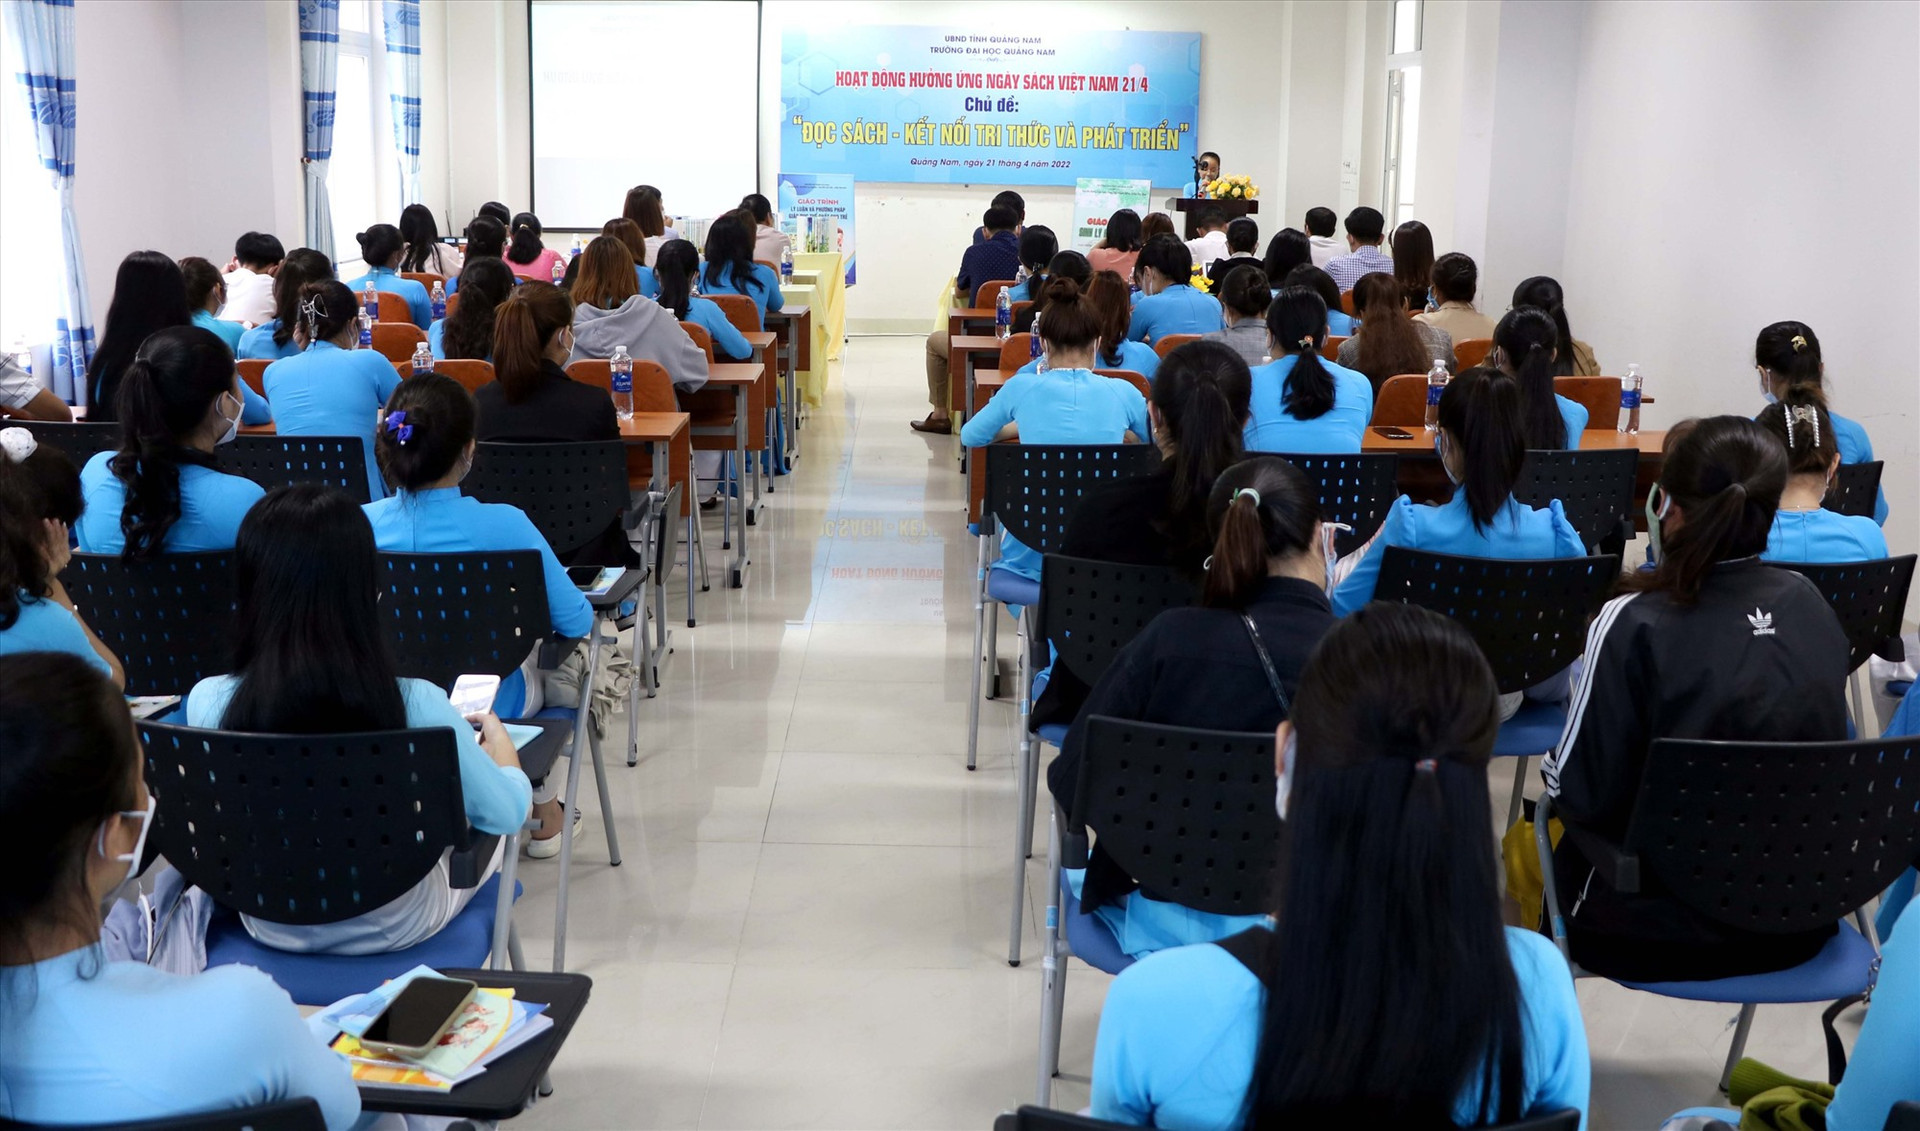 Cán bộ, giảng viên và sinh viên tham gia các hoạt động hưởng ứng Ngày sách Việt Nam. Ảnh: CHÂU HÙNG